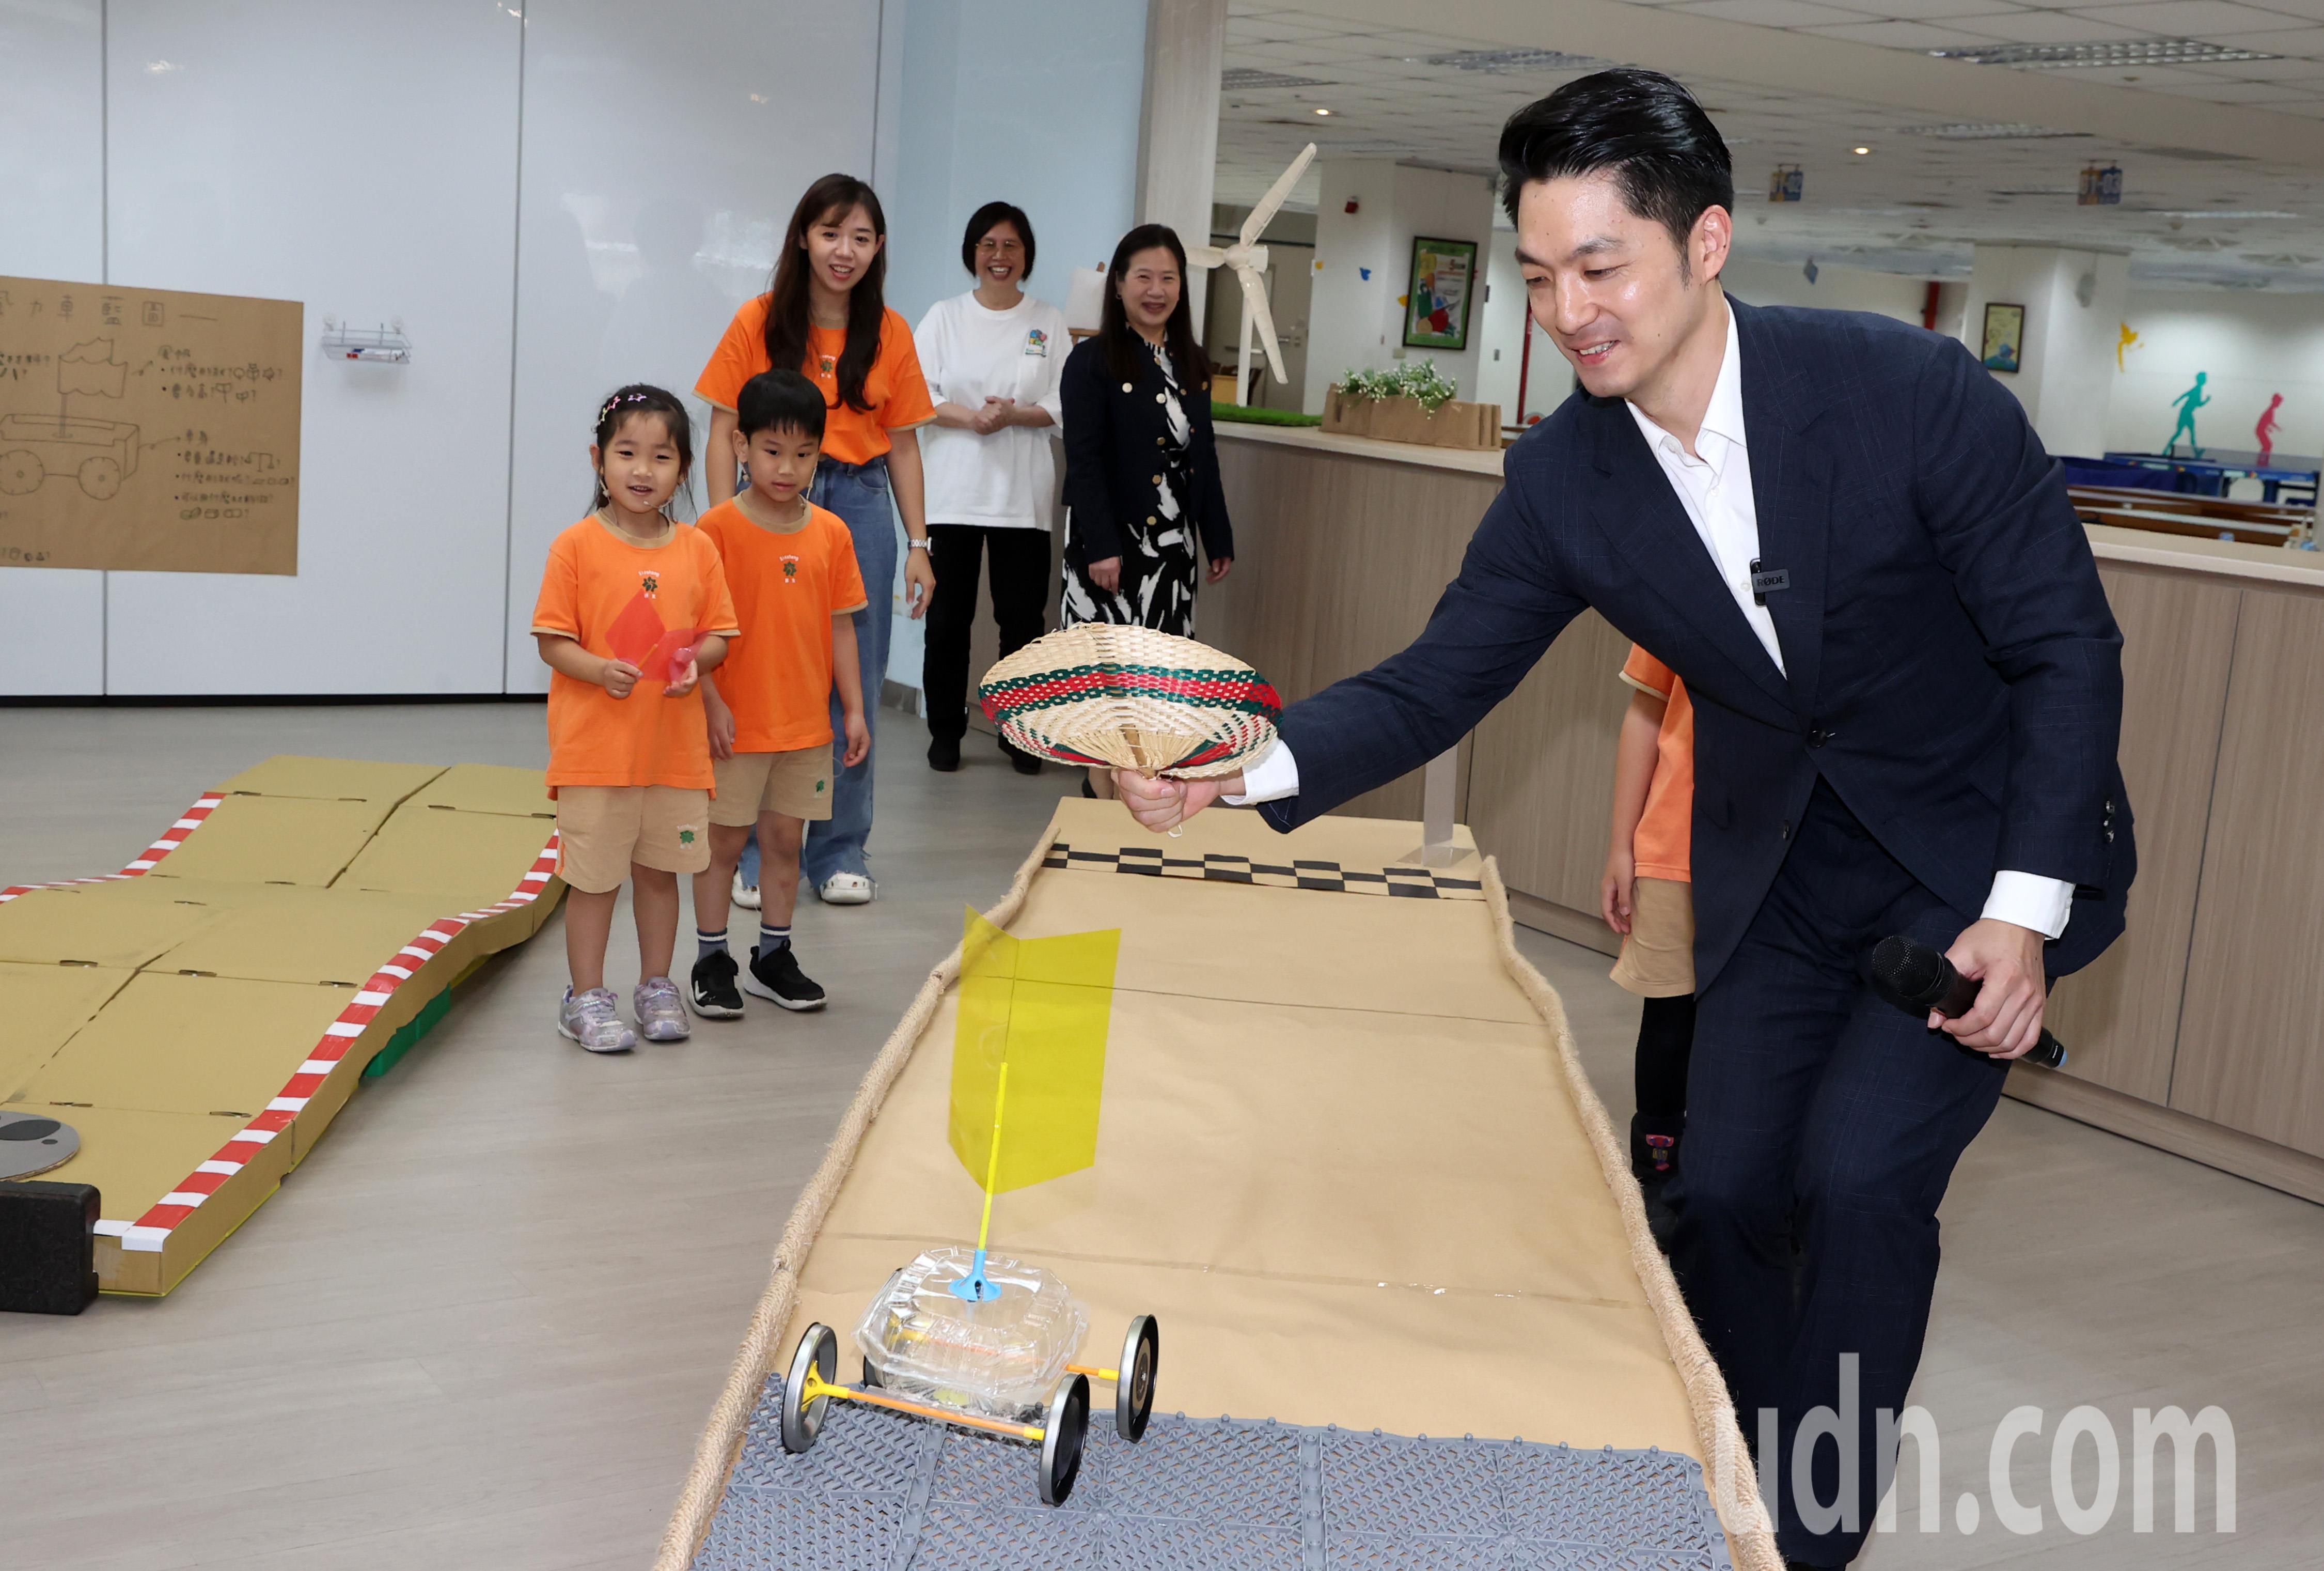 台北市长蒋万安（右）今天前往新生国小，为幼儿STEAM创思中心揭幕，并与小朋友一起玩游戏。记者胡经周／摄影